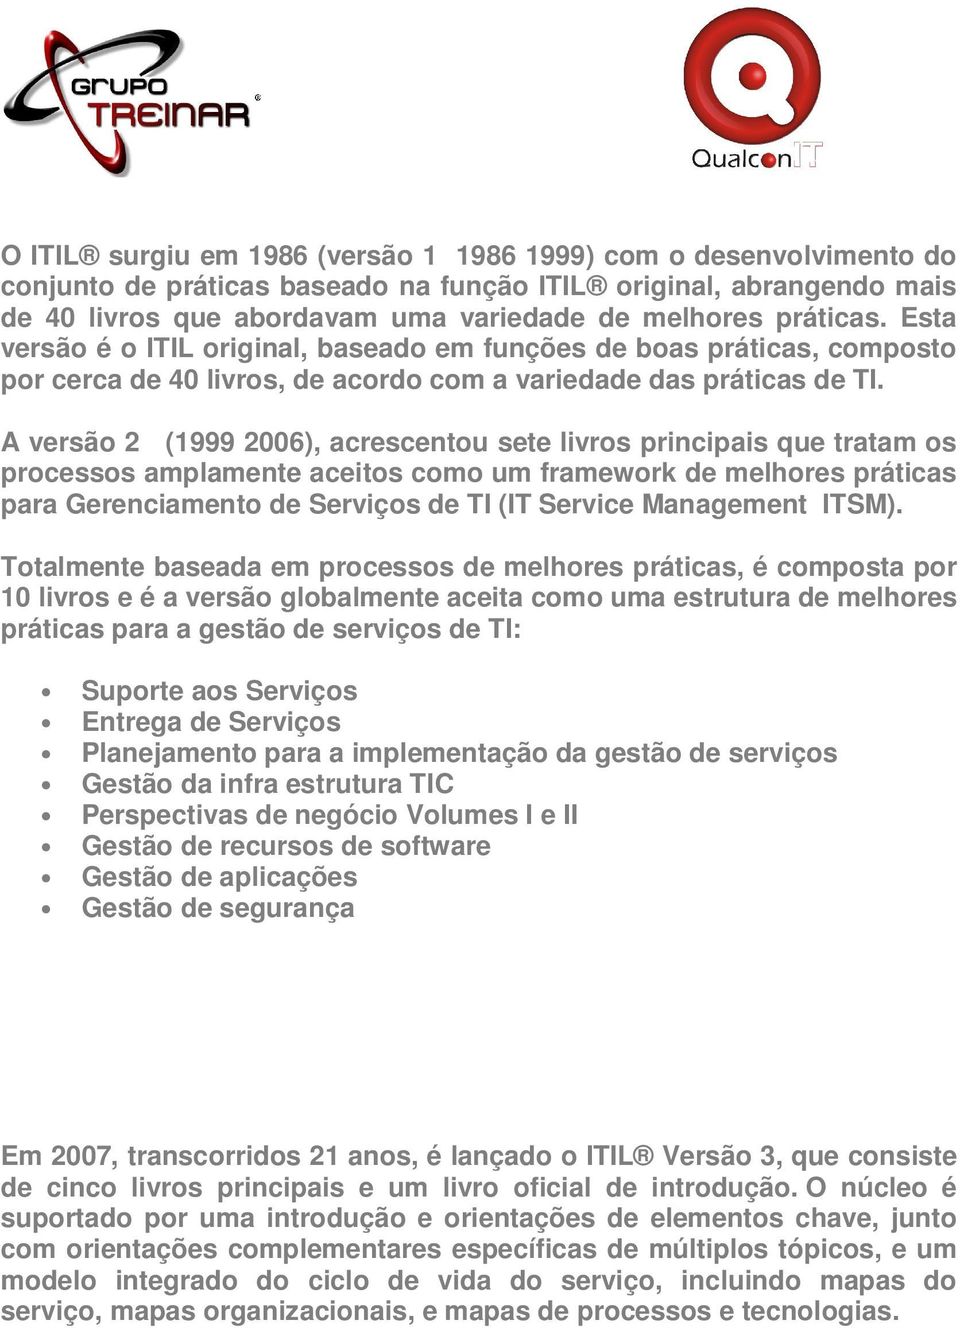 A versão 2 (1999 2006), acrescentou sete livros principais que tratam os processos amplamente aceitos como um framework de melhores práticas para Gerenciamento de Serviços de TI (IT Service